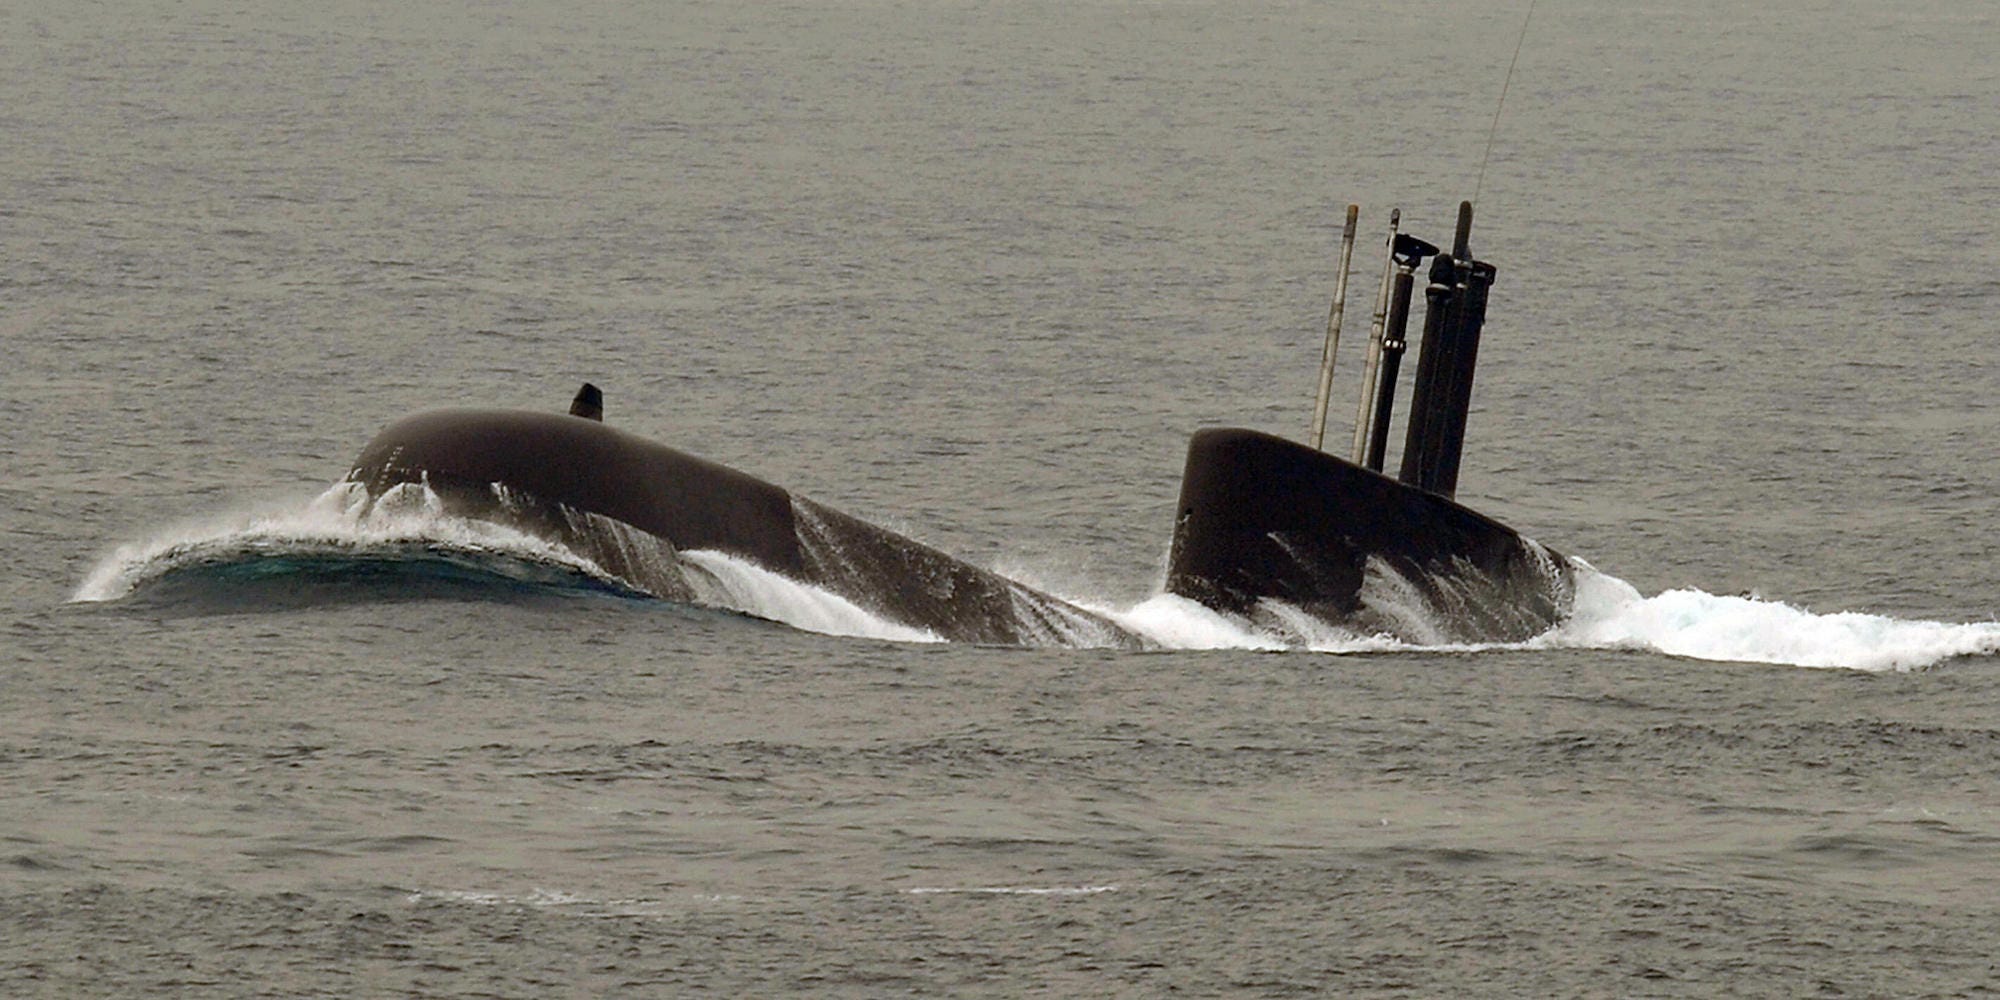 South Korean navy submarine surfacing